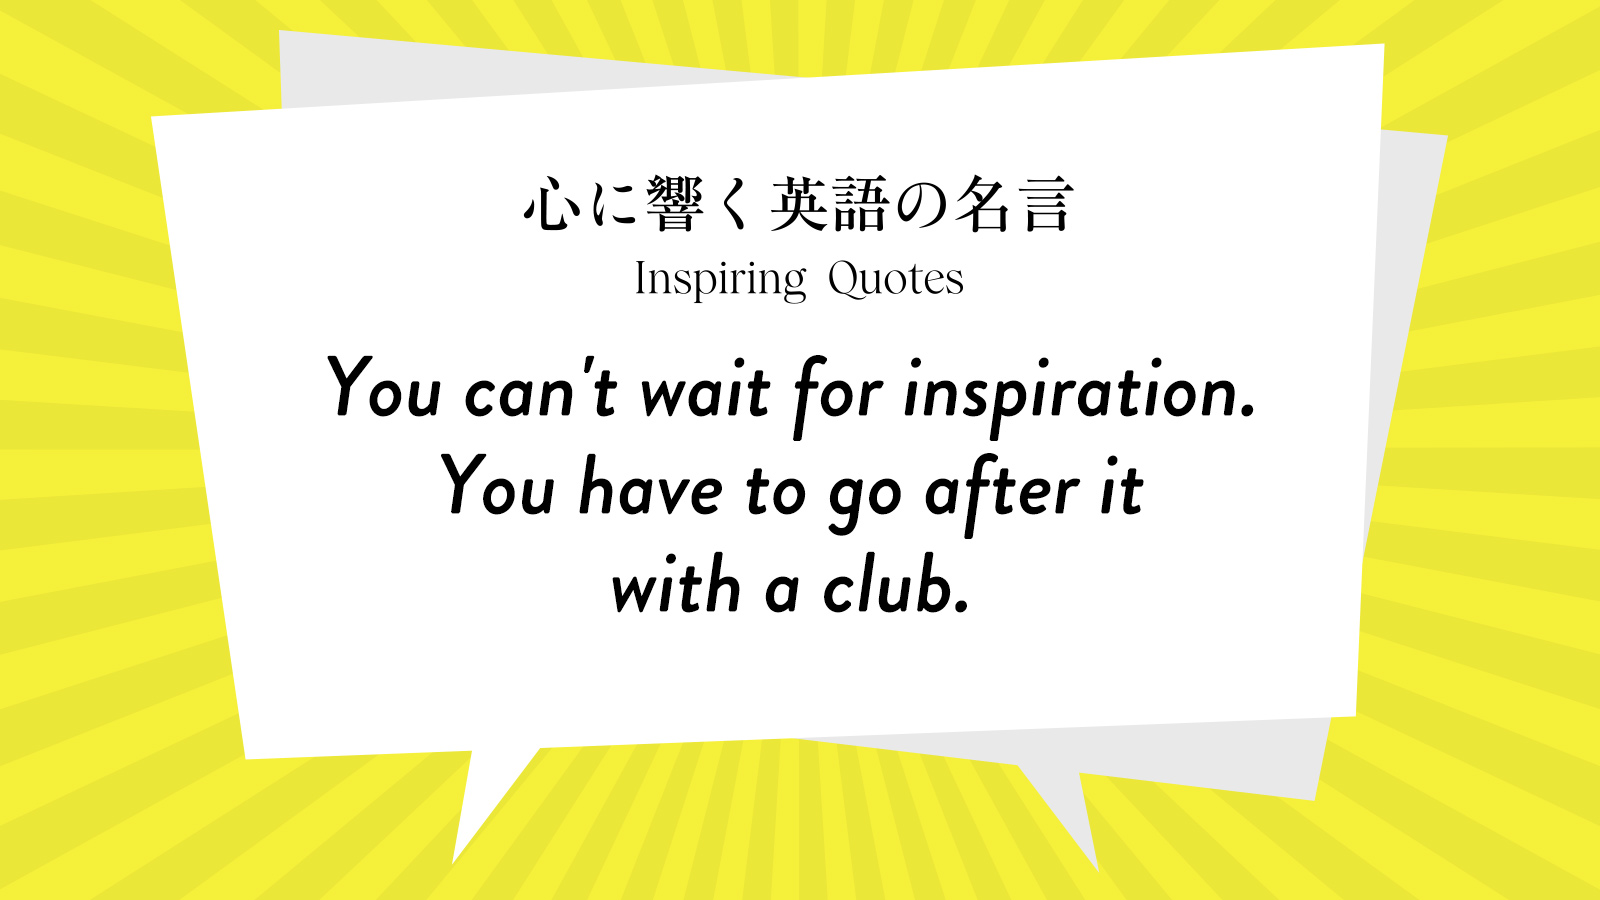 今週の名言 “You can’t wait for inspiration. You have to go after it with a club.” | Inspiring Quotes: 心に響く英語の名言